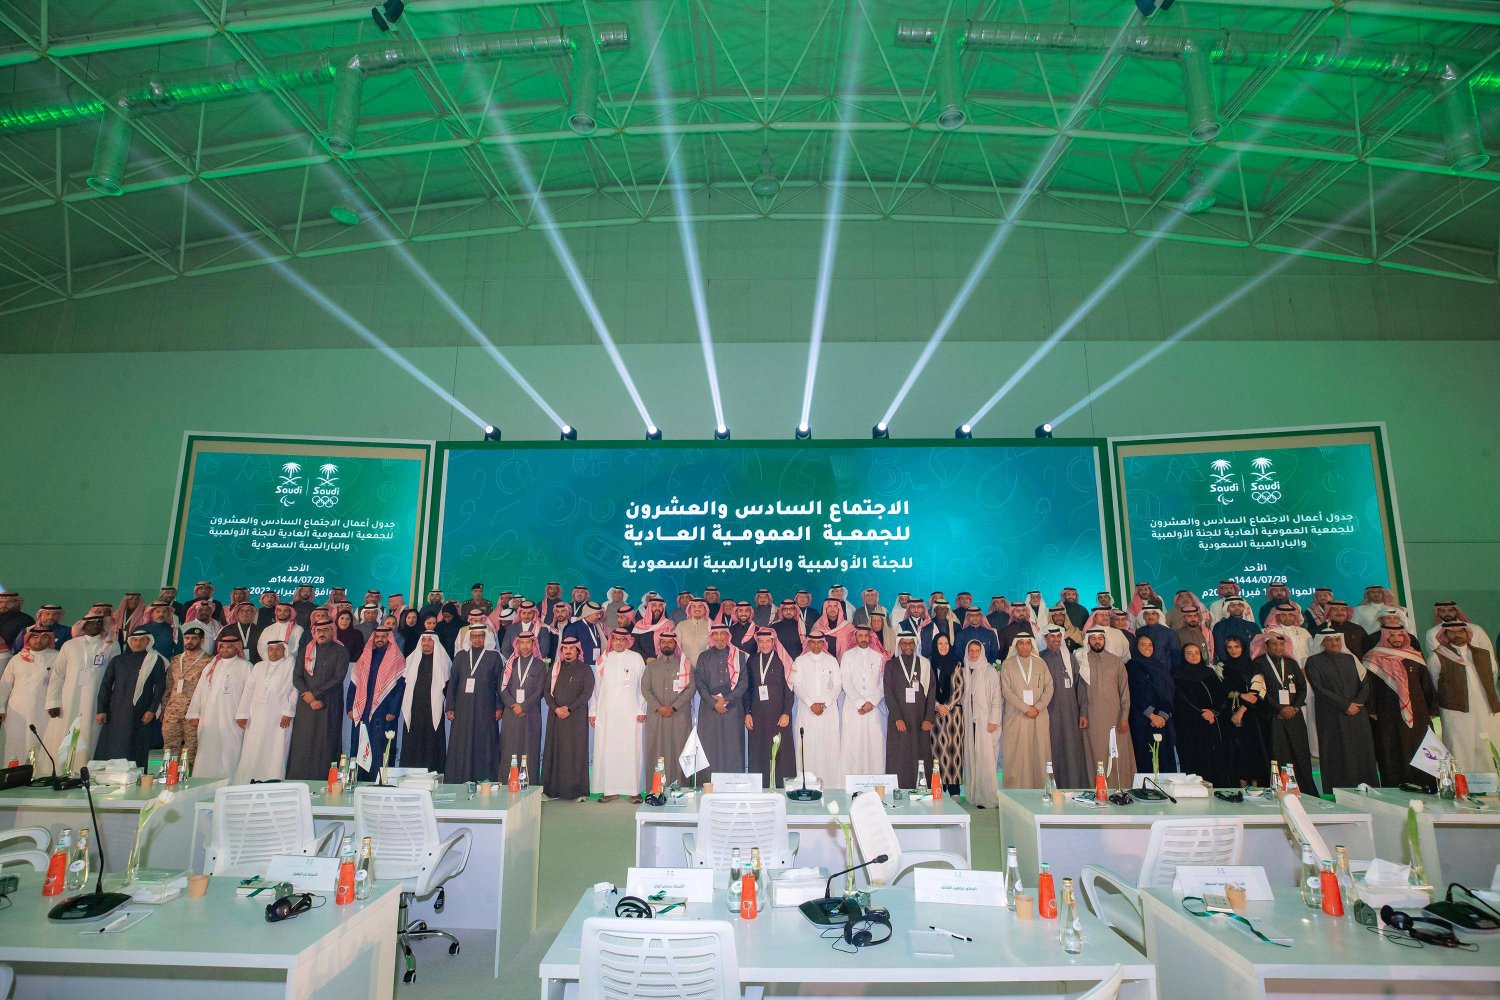 الأمير عبد العزيز بن تركي الفيصل يتوسط أعضاء الجمعية العمومية في الدورة السابقة (الشرق الأوسط)